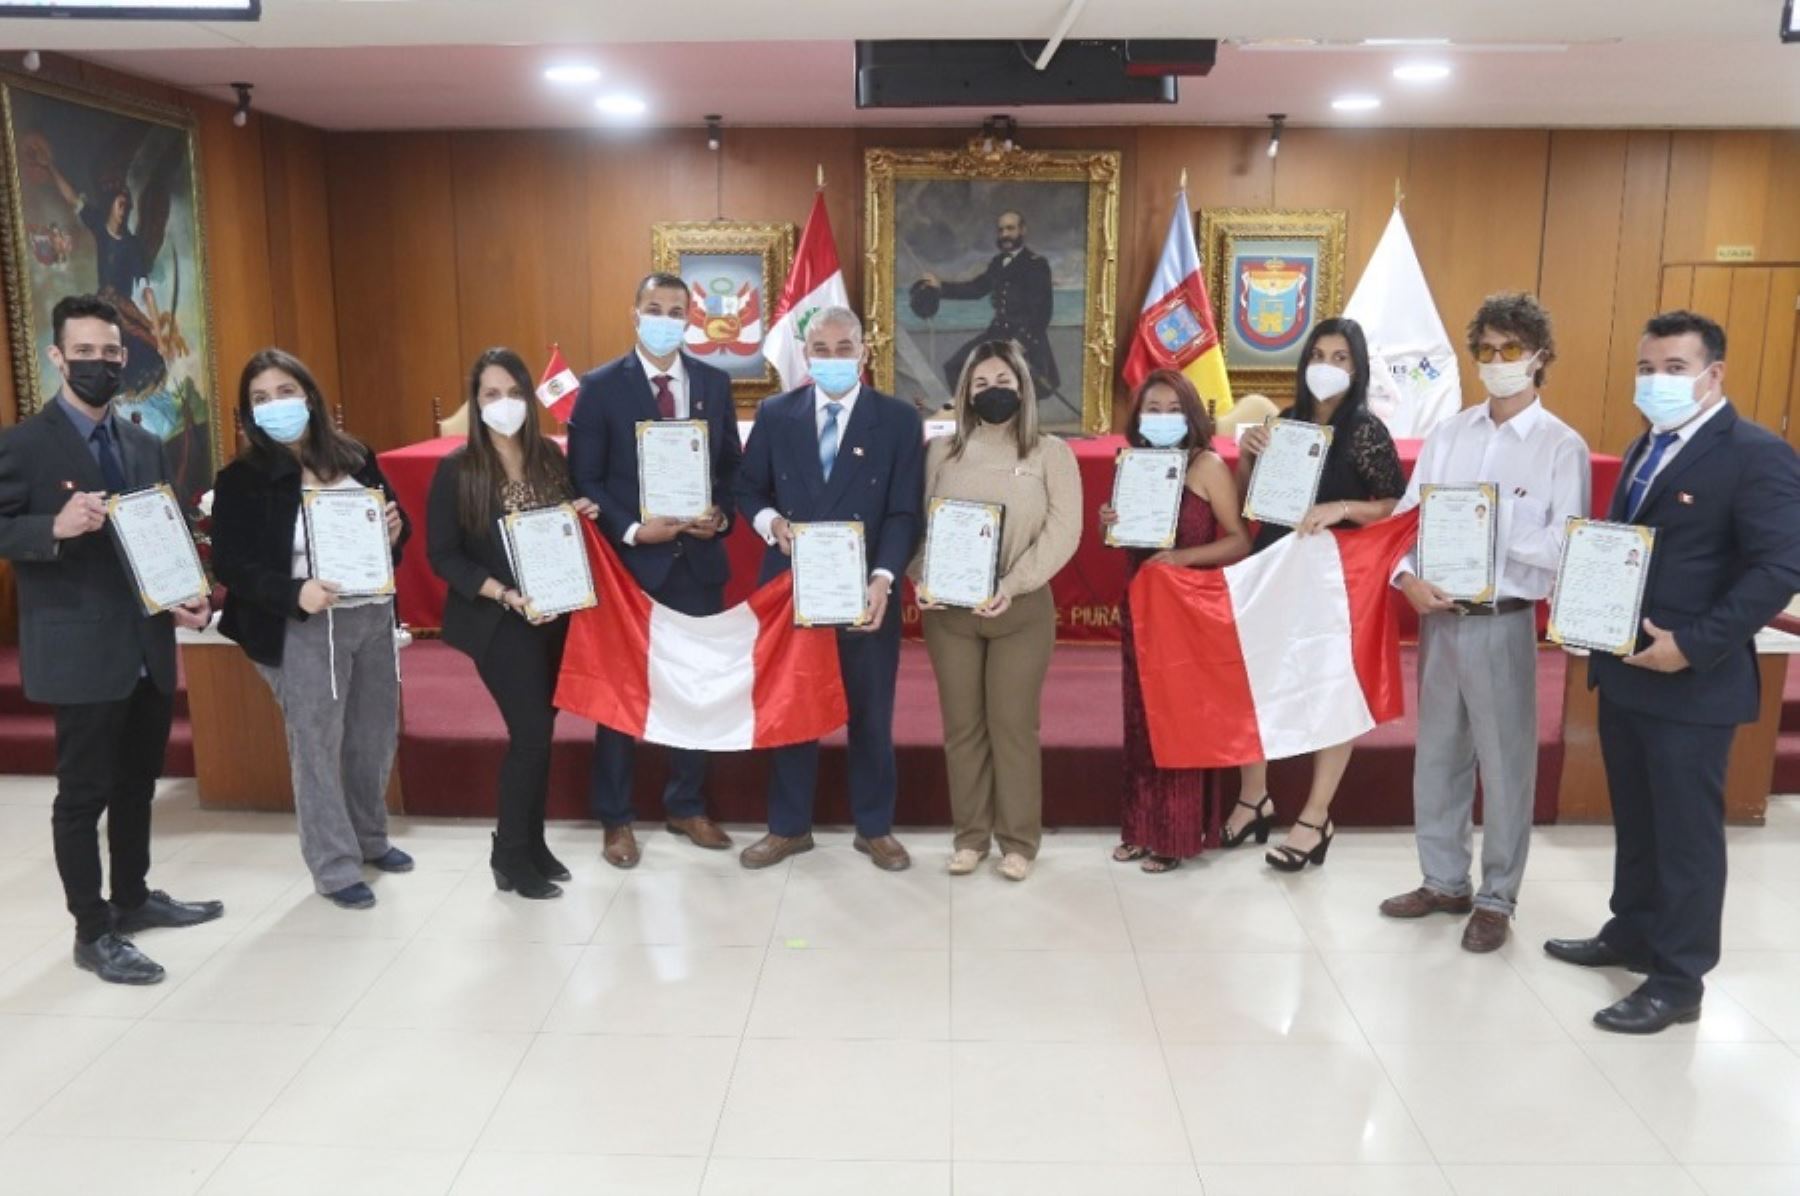 Un nuevo grupo de ciudadanos nacidos en el exterior obtuvieron la nacionalidad peruana en una emotiva ceremonia organizada por la Superintendencia Nacional de Migraciones, en la municipalidad provincial de Piura.